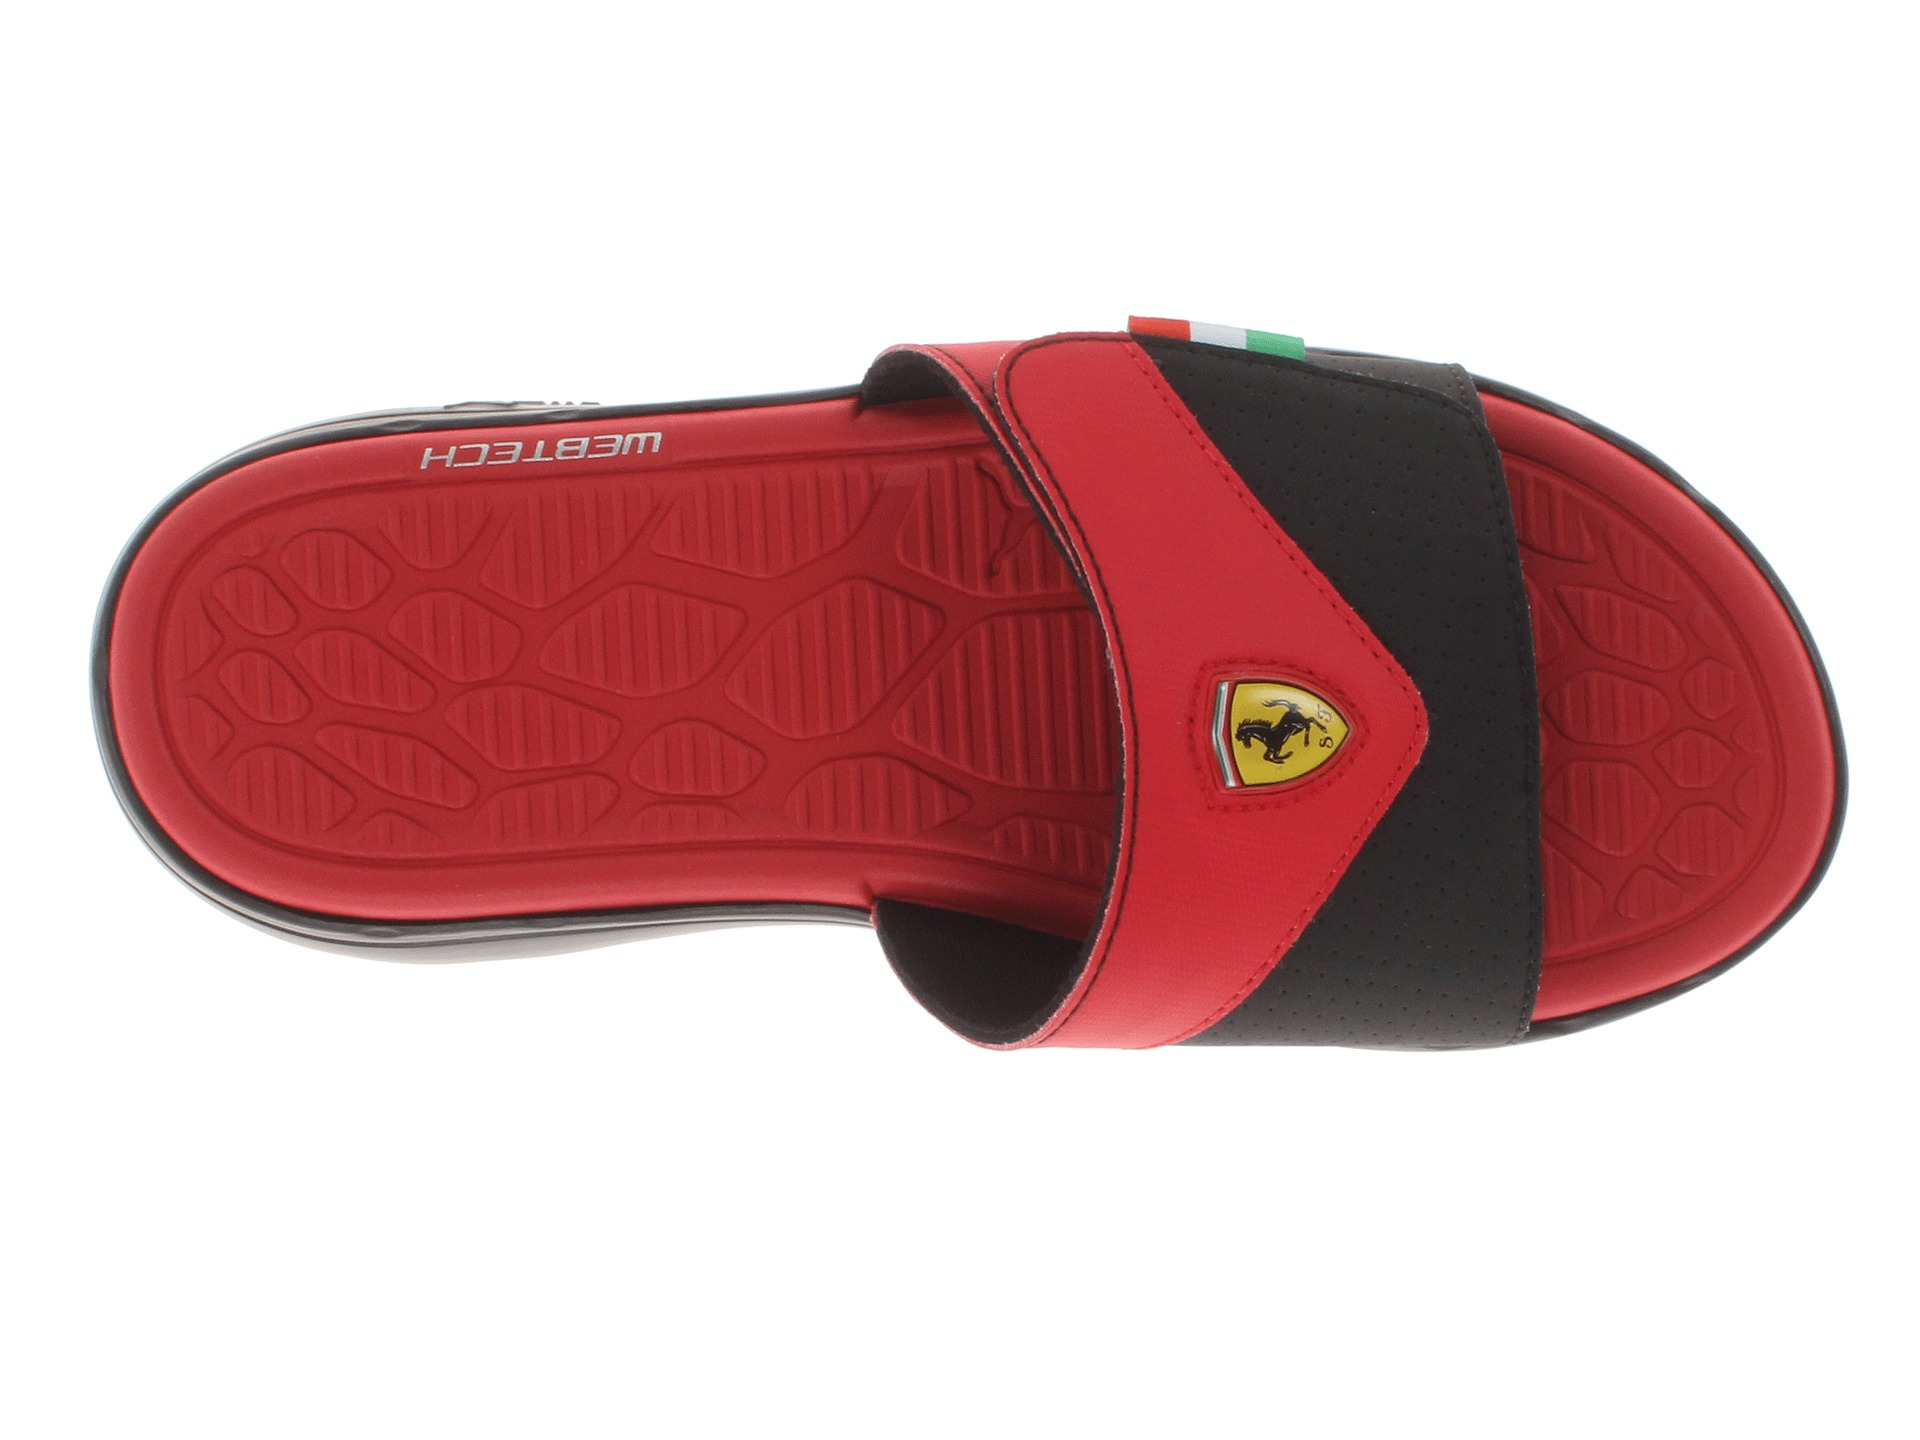 PUMA Ferrari Slip in Slide in Red for Men | Lyst